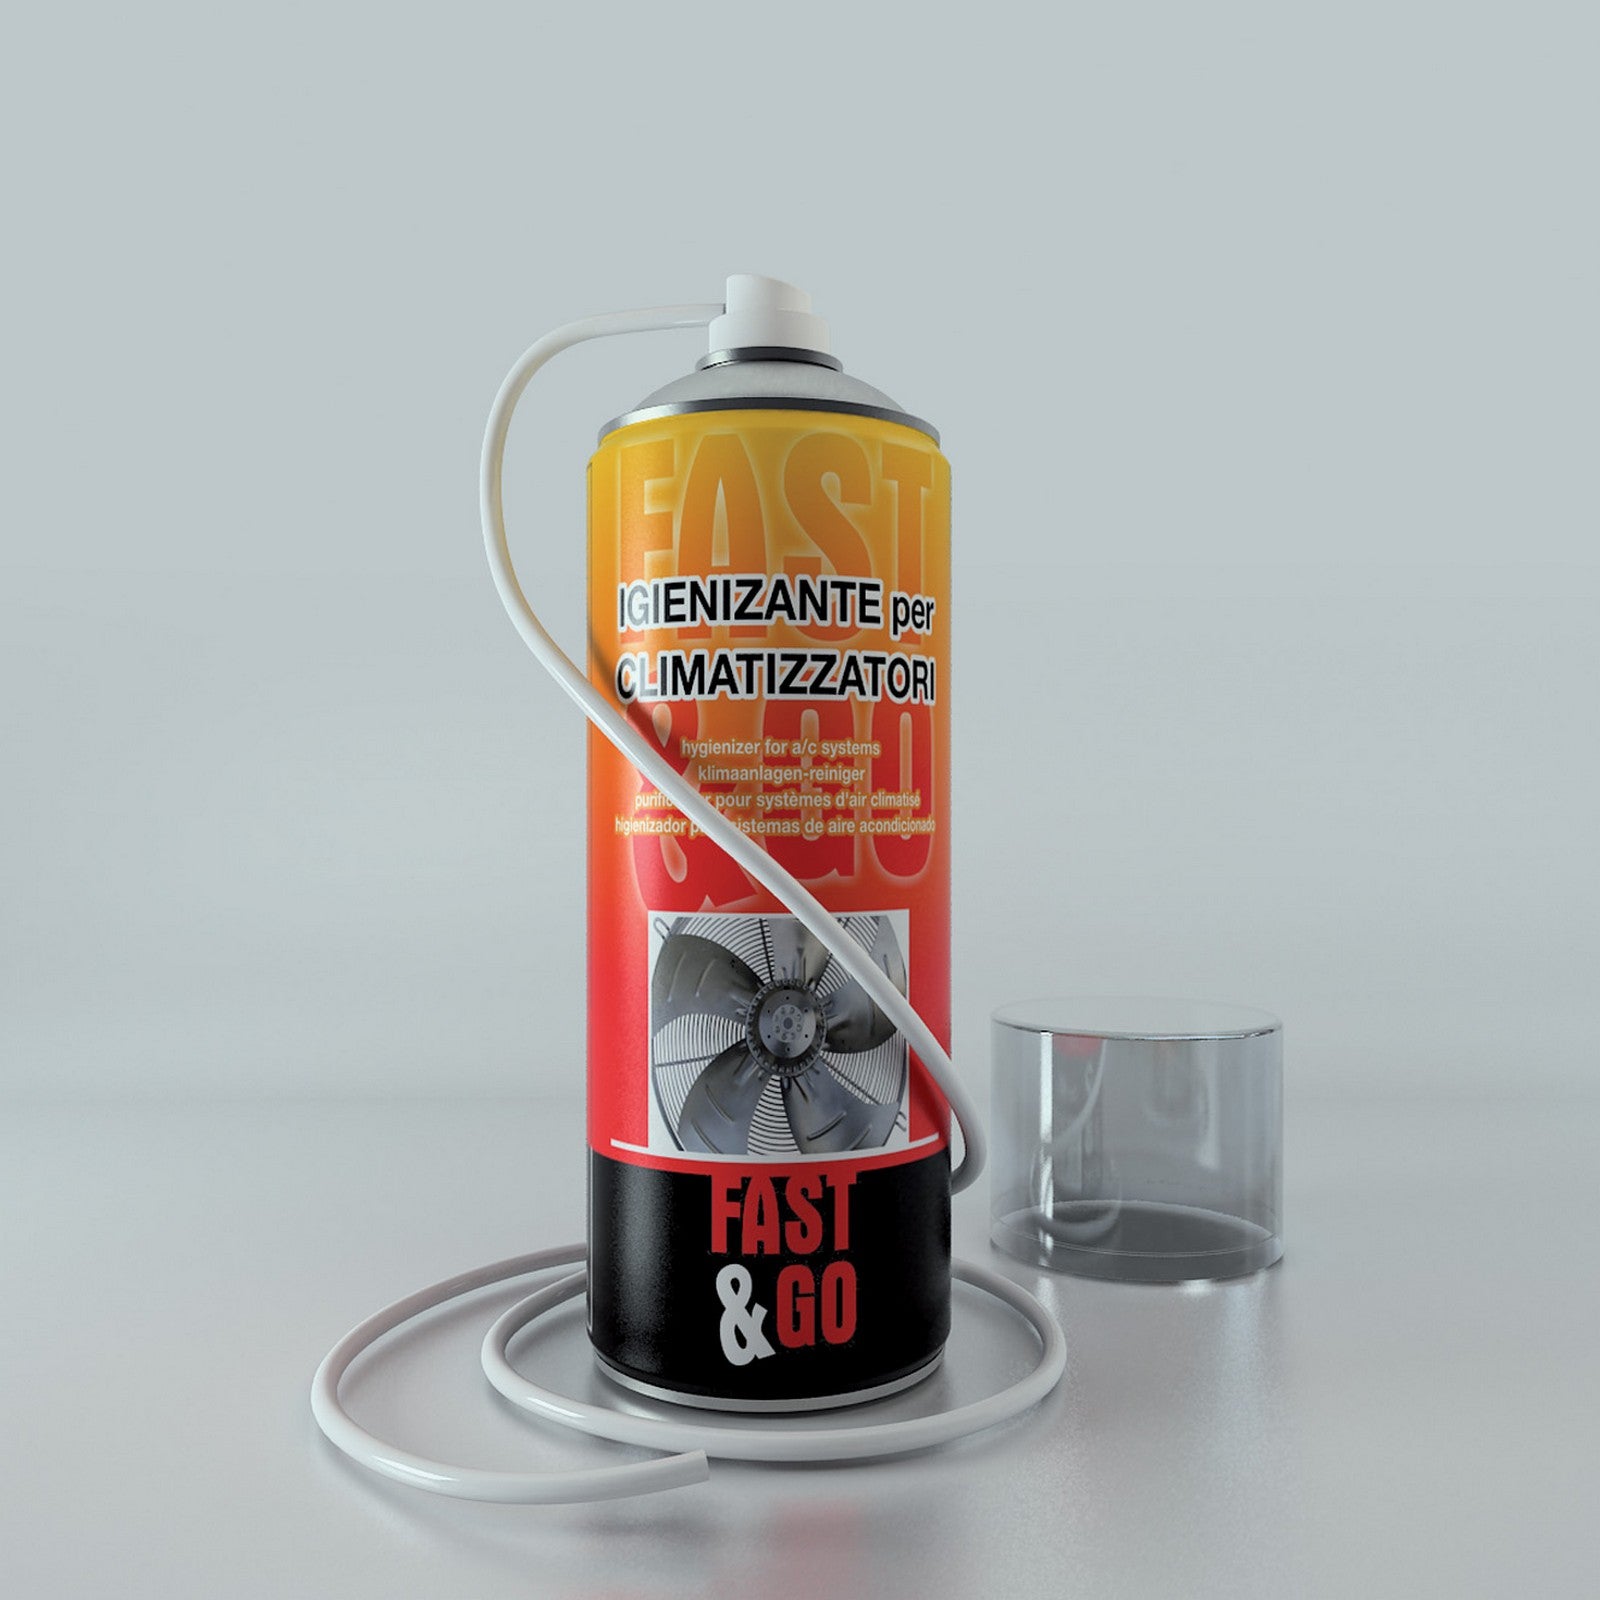 12pz spray "fast&go" igienizzante clima ml.400 cod:ferx.6056